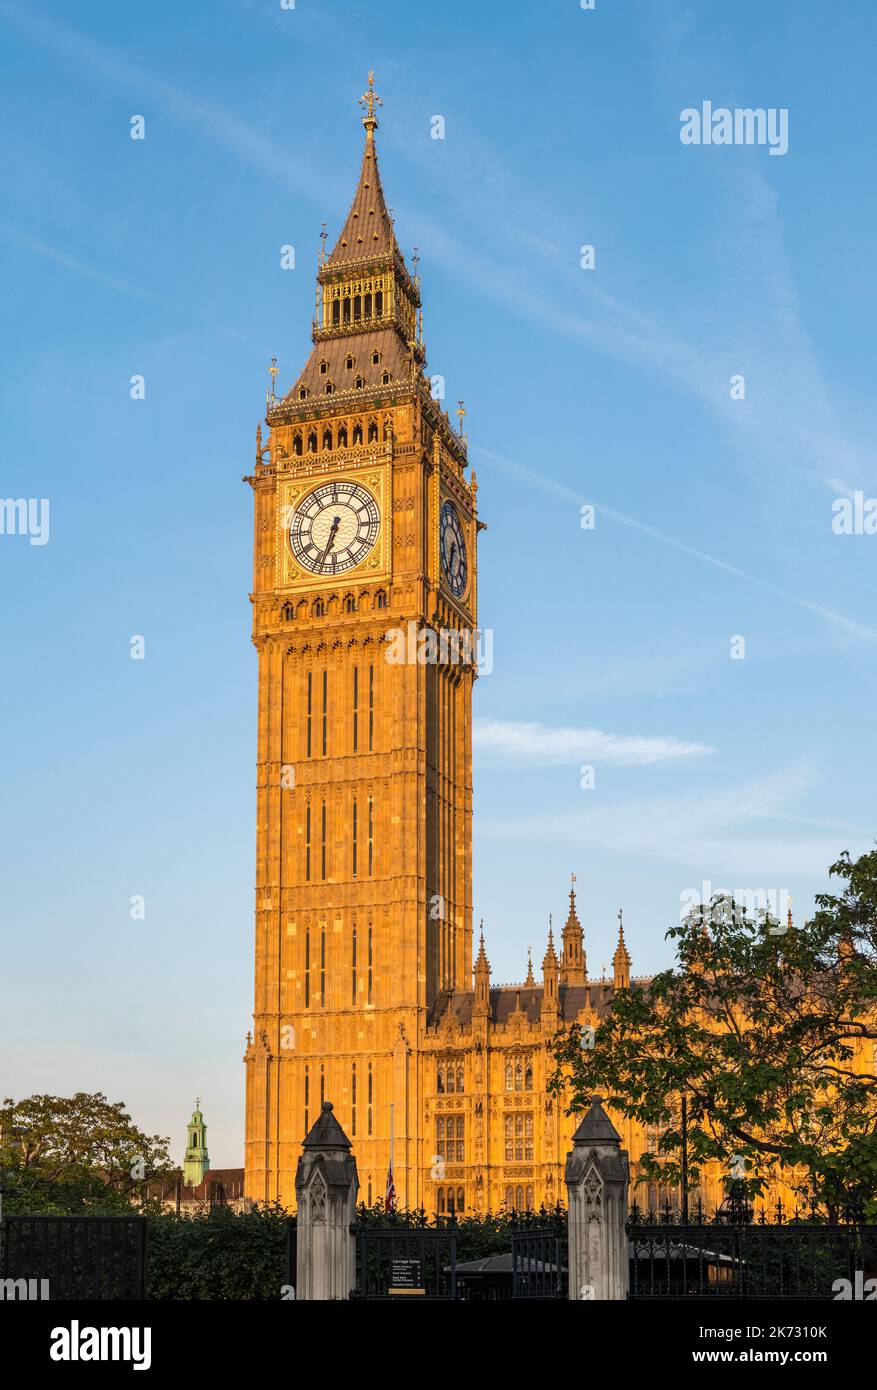 Der 96m-Uhr-Turm des Big Ben (der Elizabeth Tower), Teil des Palace of Westminster, nach seiner kürzlich 4-jährigen Renovierung, im späten Abendlicht Stockfoto